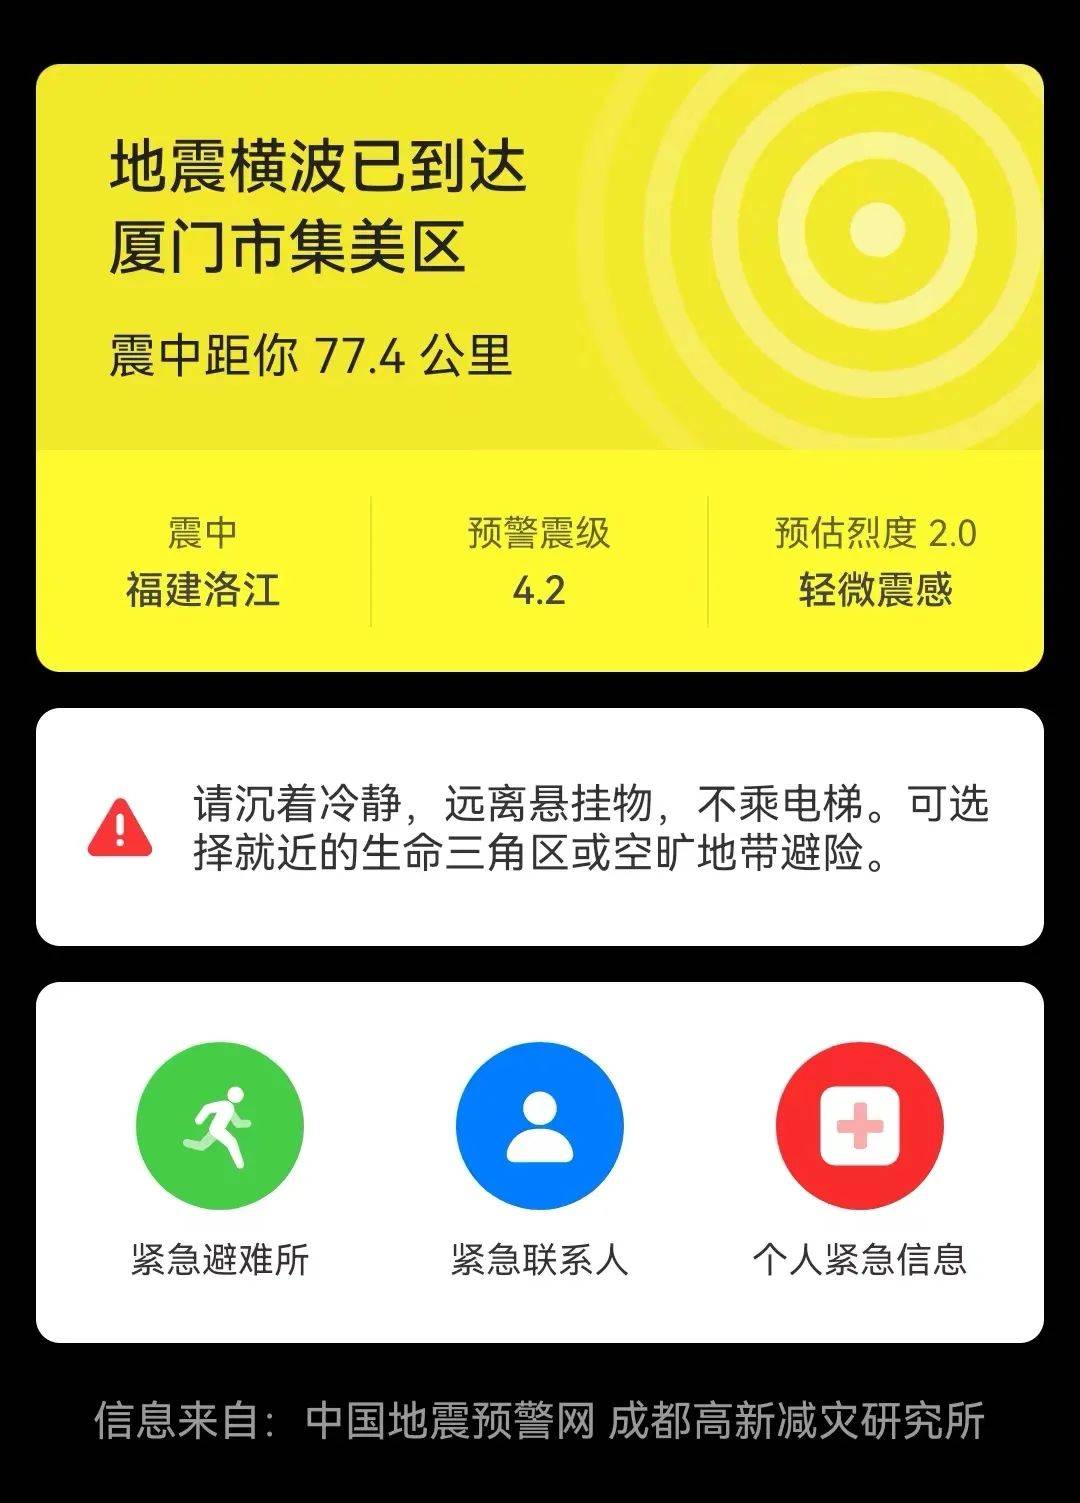 73级地震厦门等多地震感强烈你的手机地震预警功能快打开自救指南